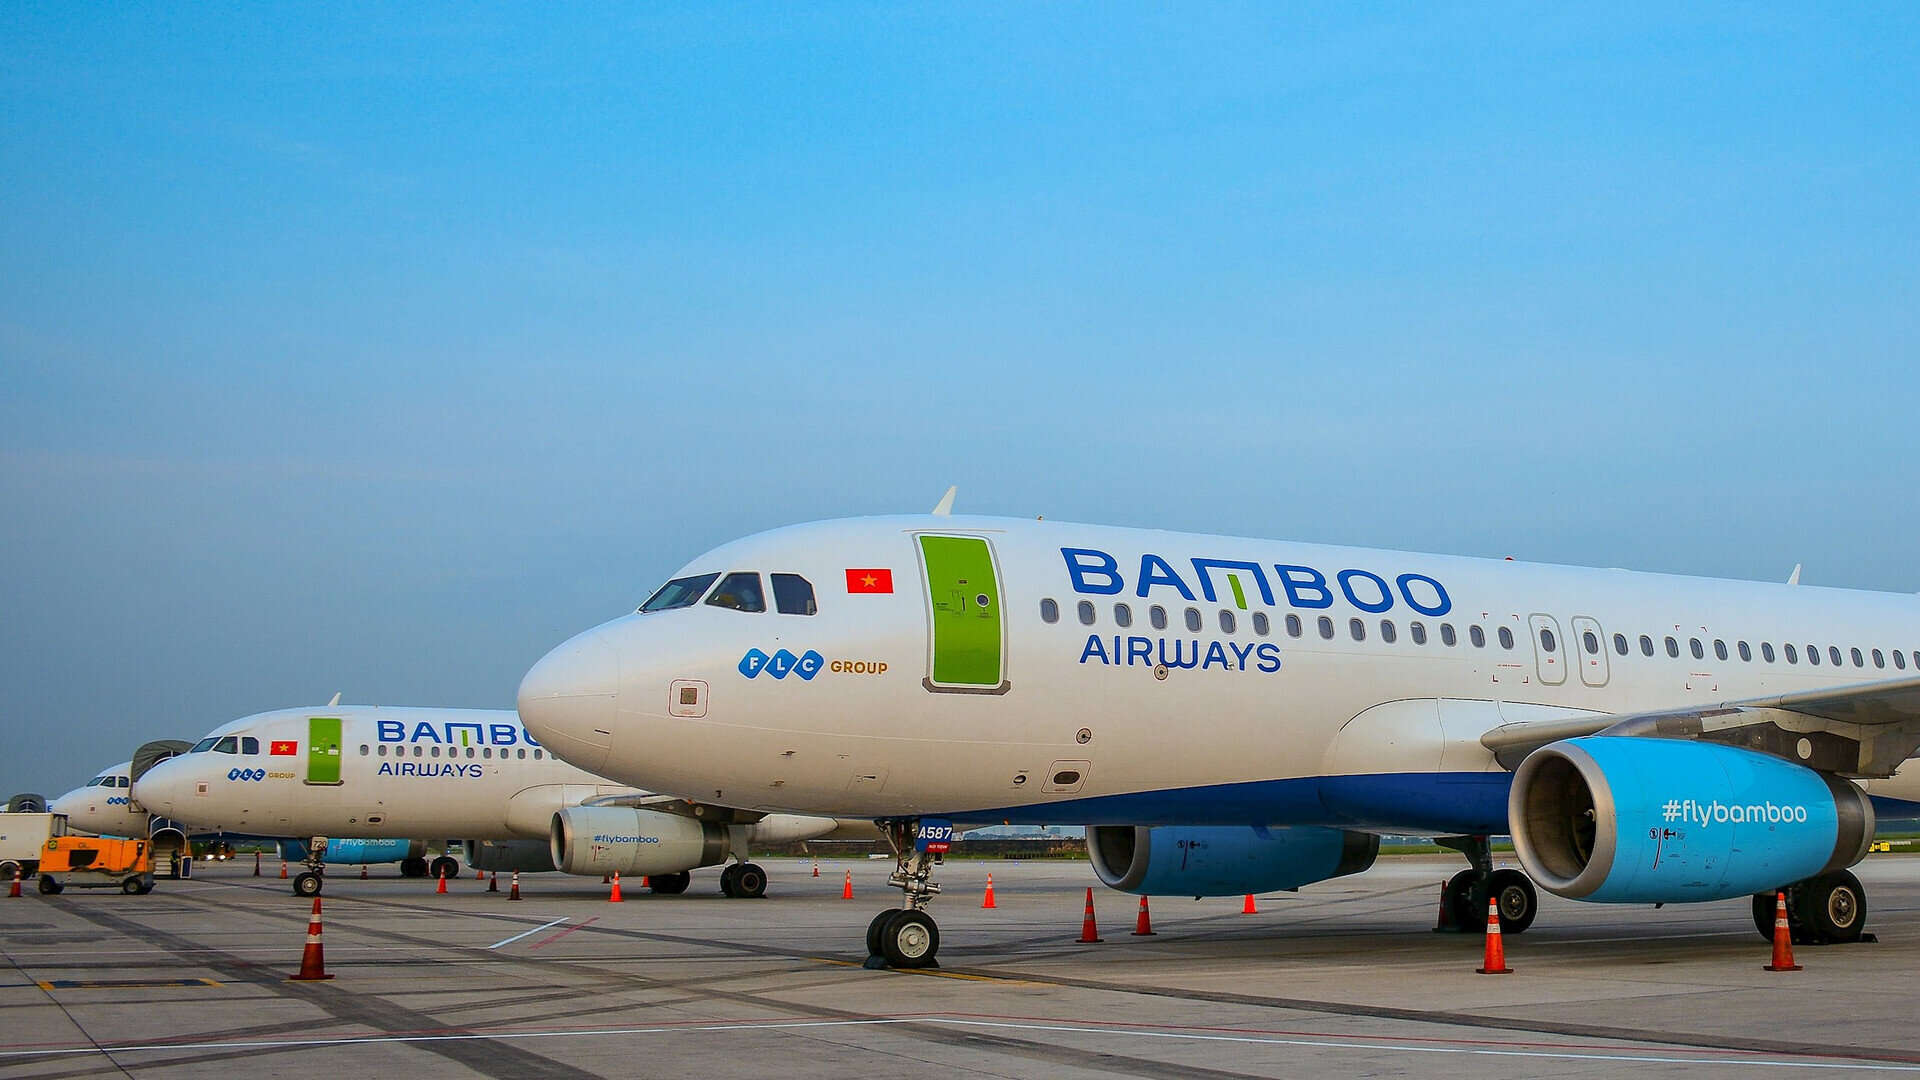 Nhiều chuyến bay Bamboo Airways bị thay đổi lịch trình trong những ngày gần đây. (Ảnh minh họa)